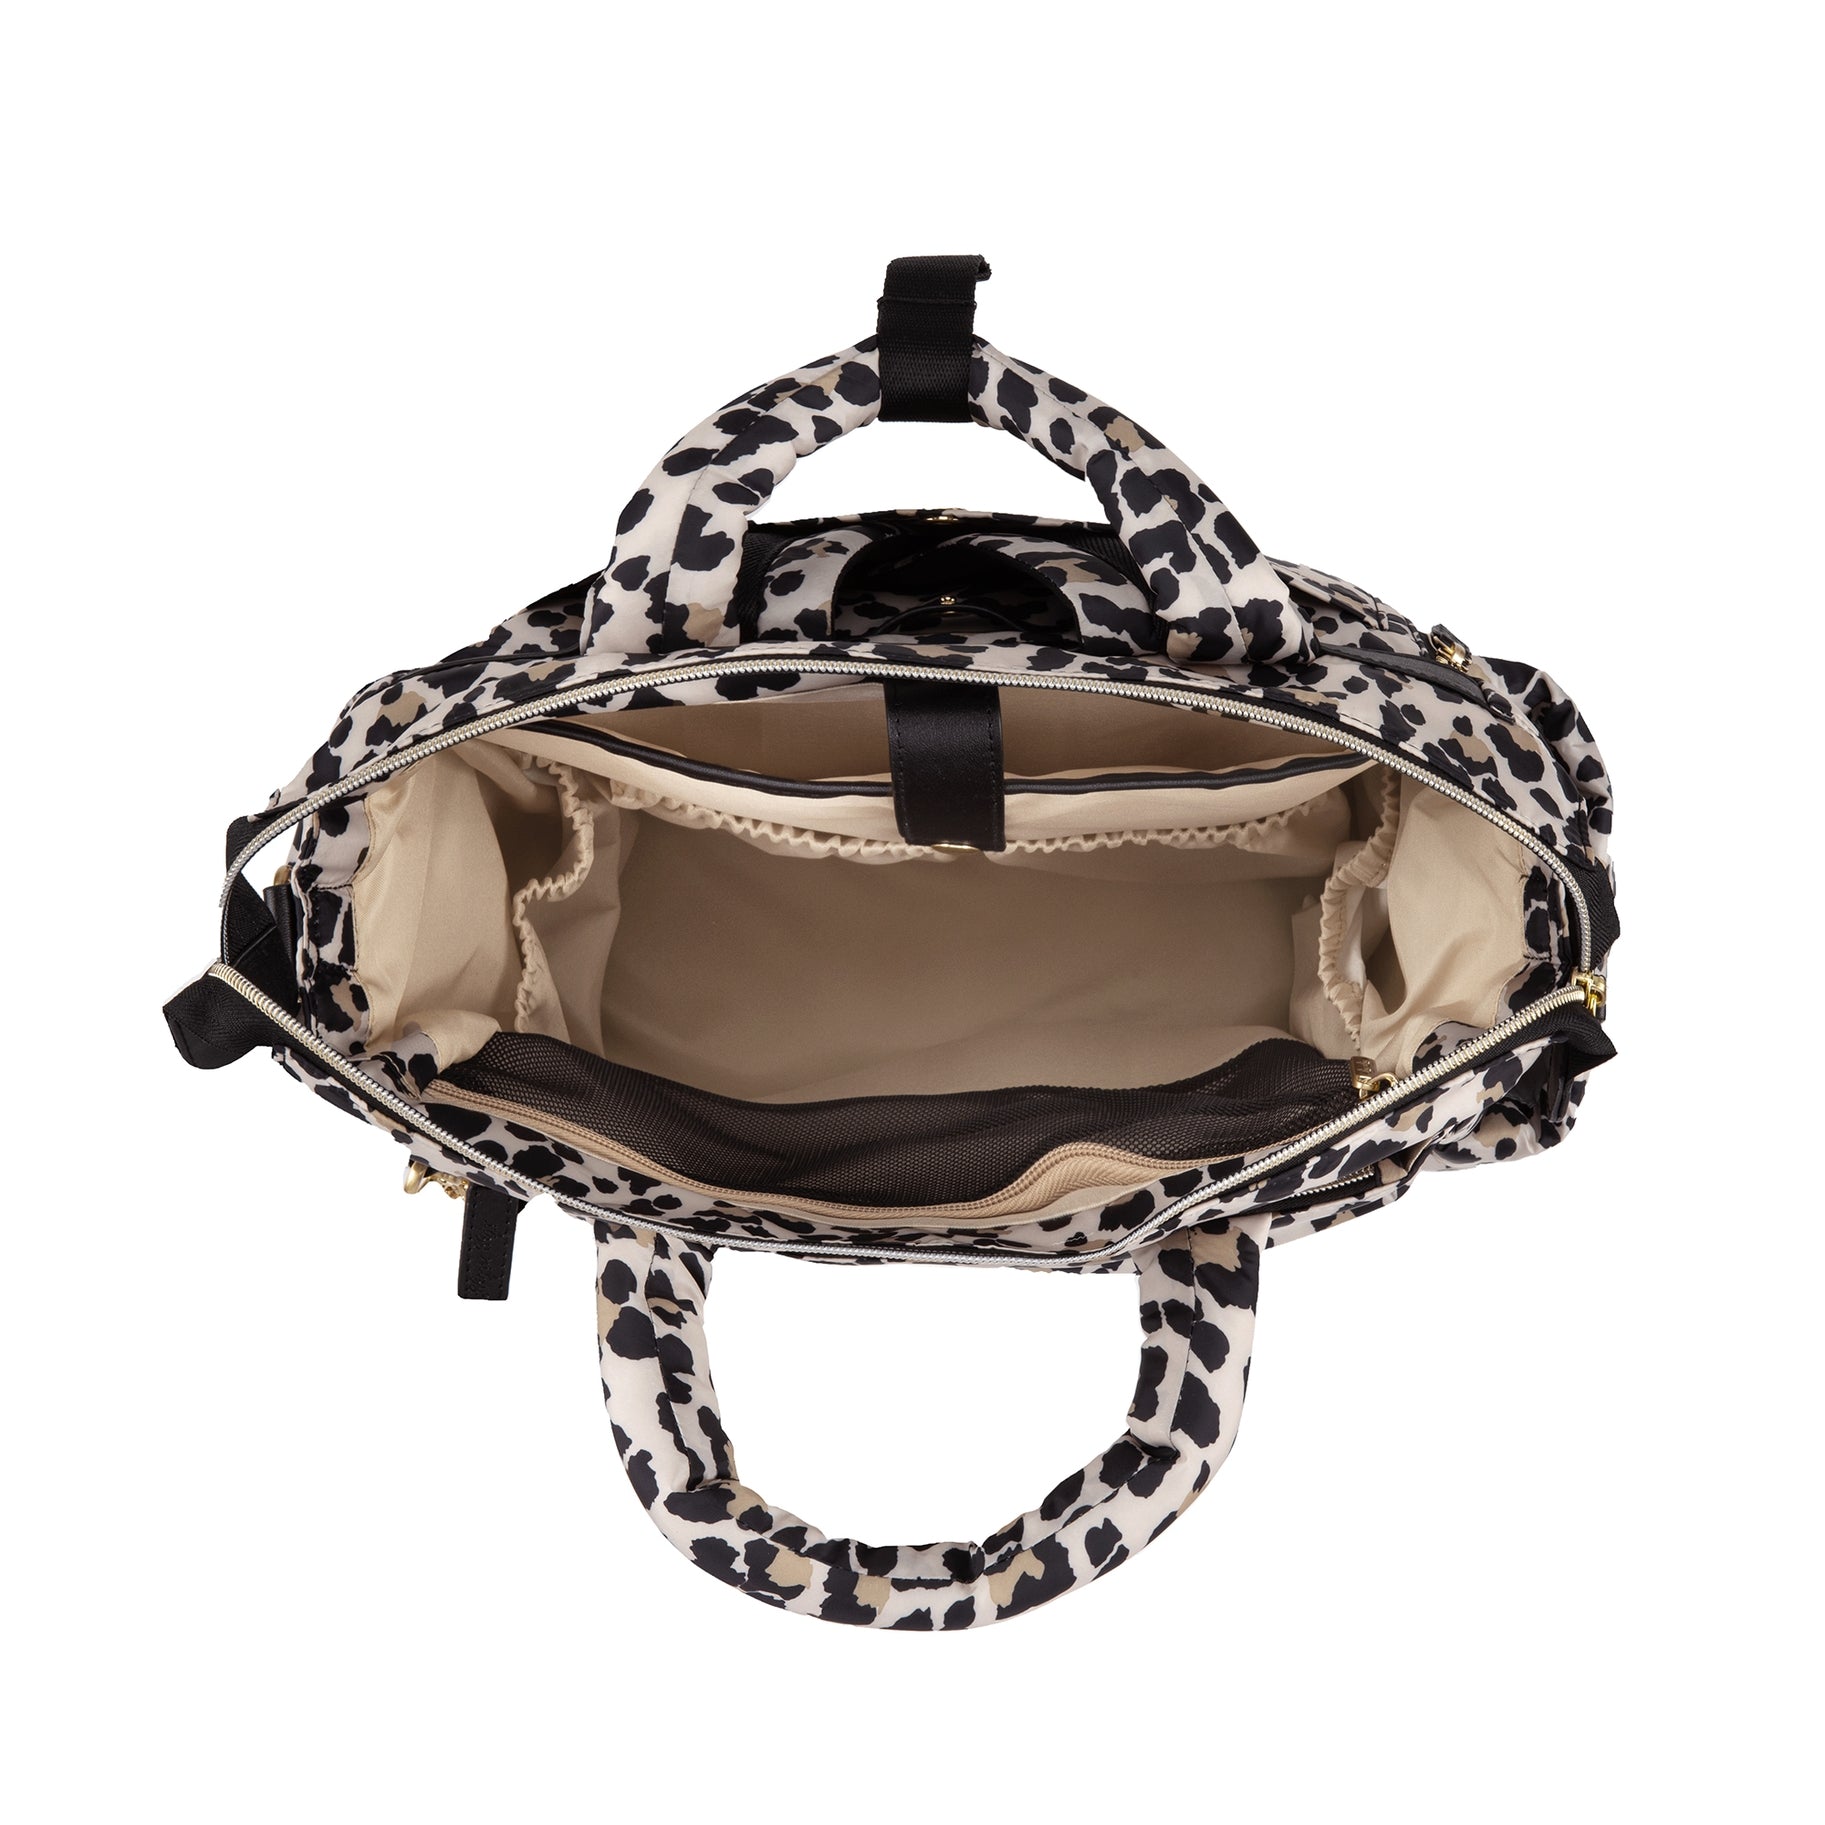 Itzy Ritzy Dream Convertible Diaper Bag Leopard